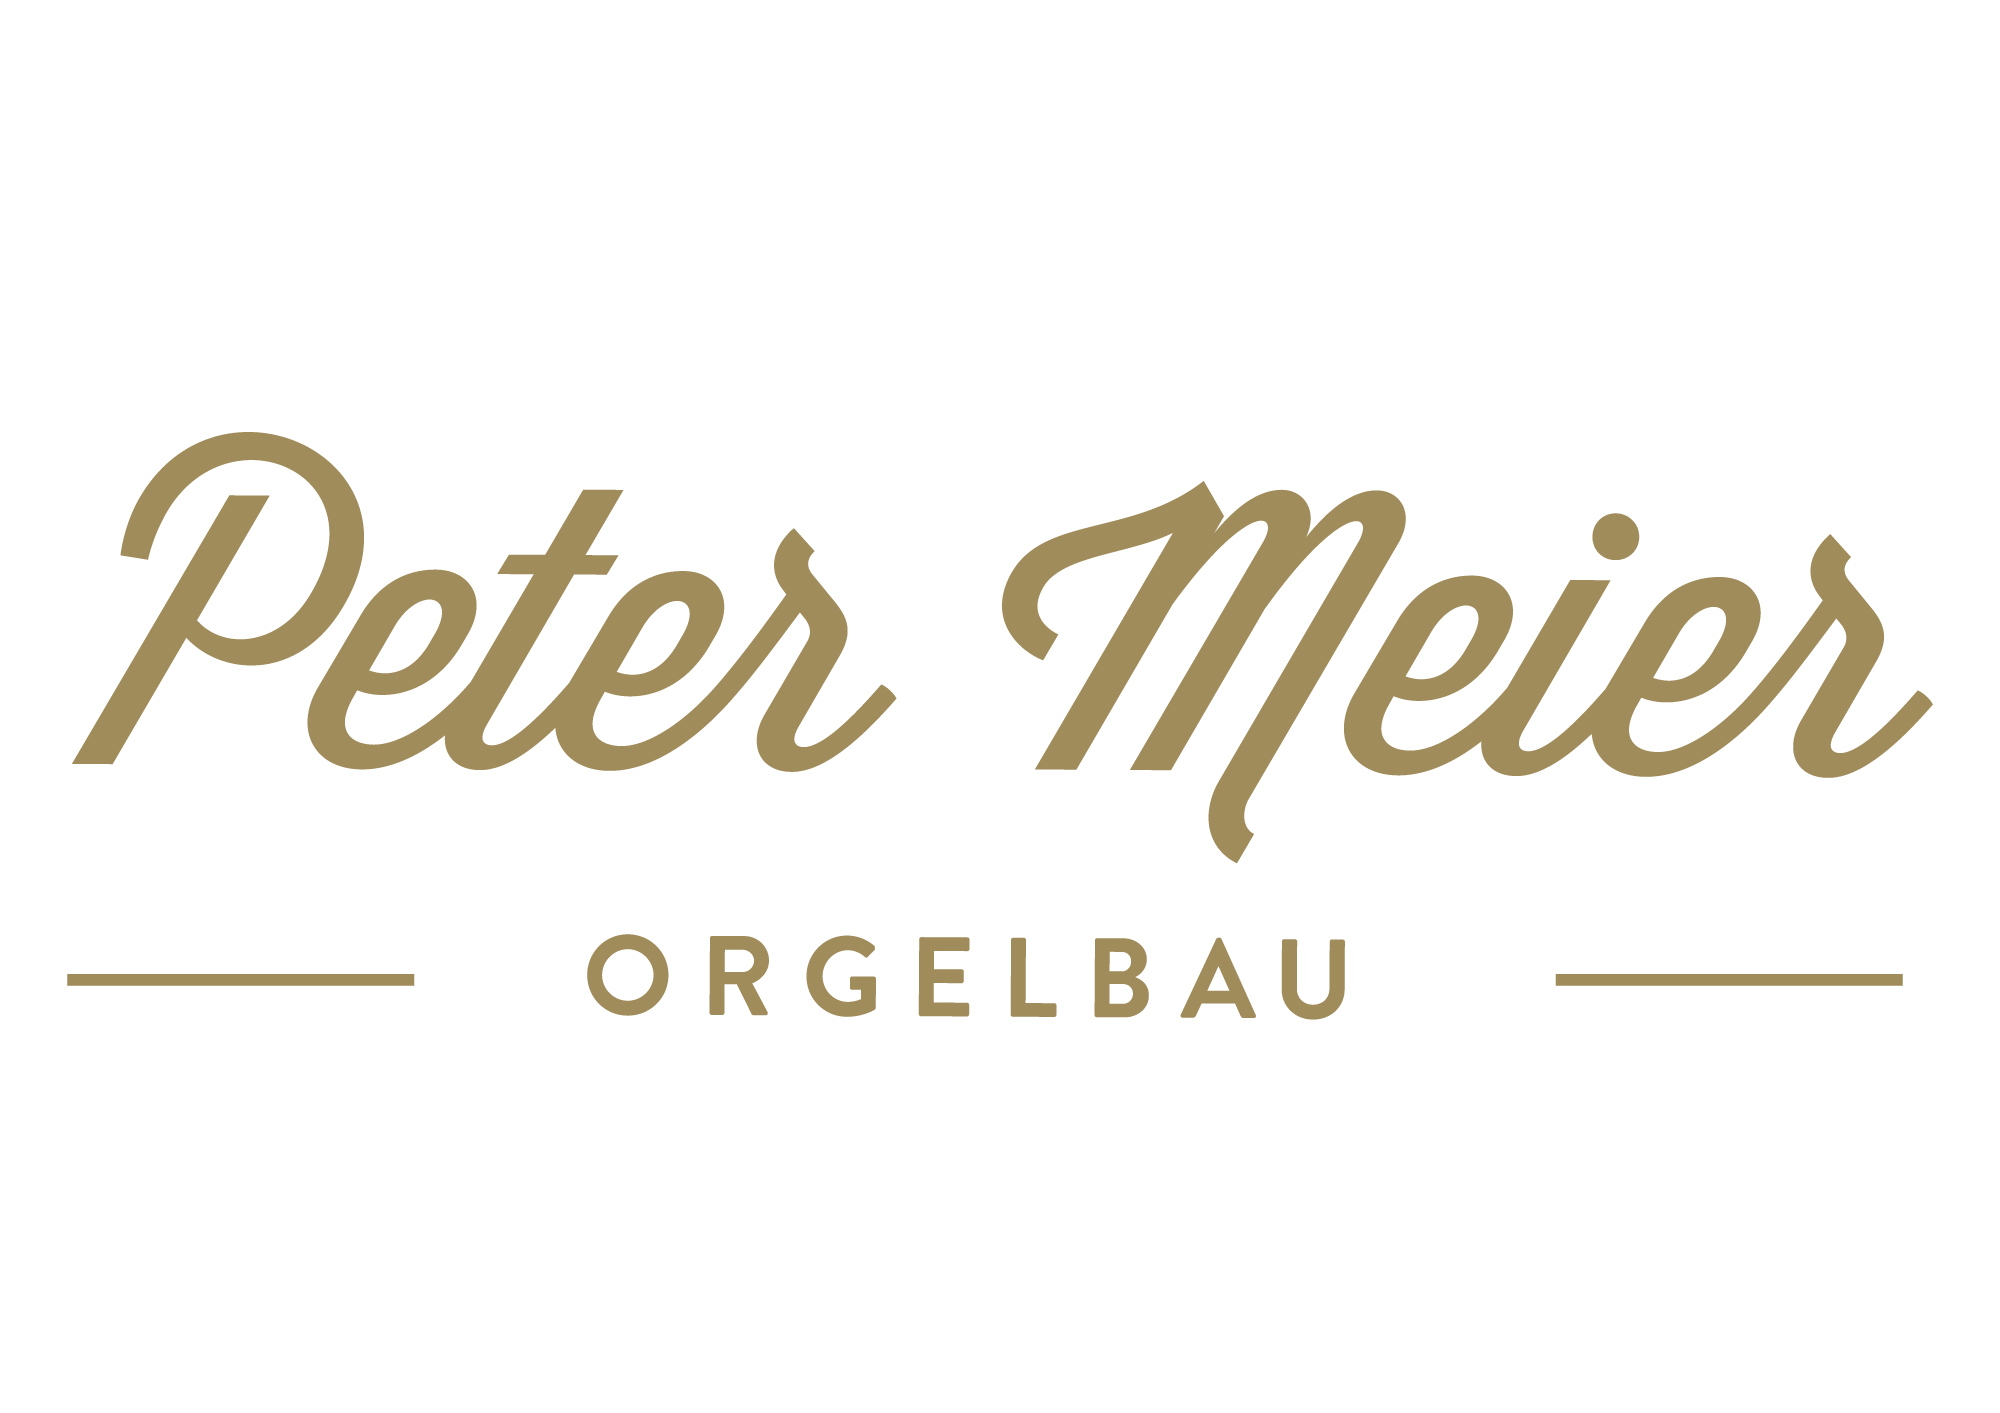 Peter Meier Orgelbau GmbH